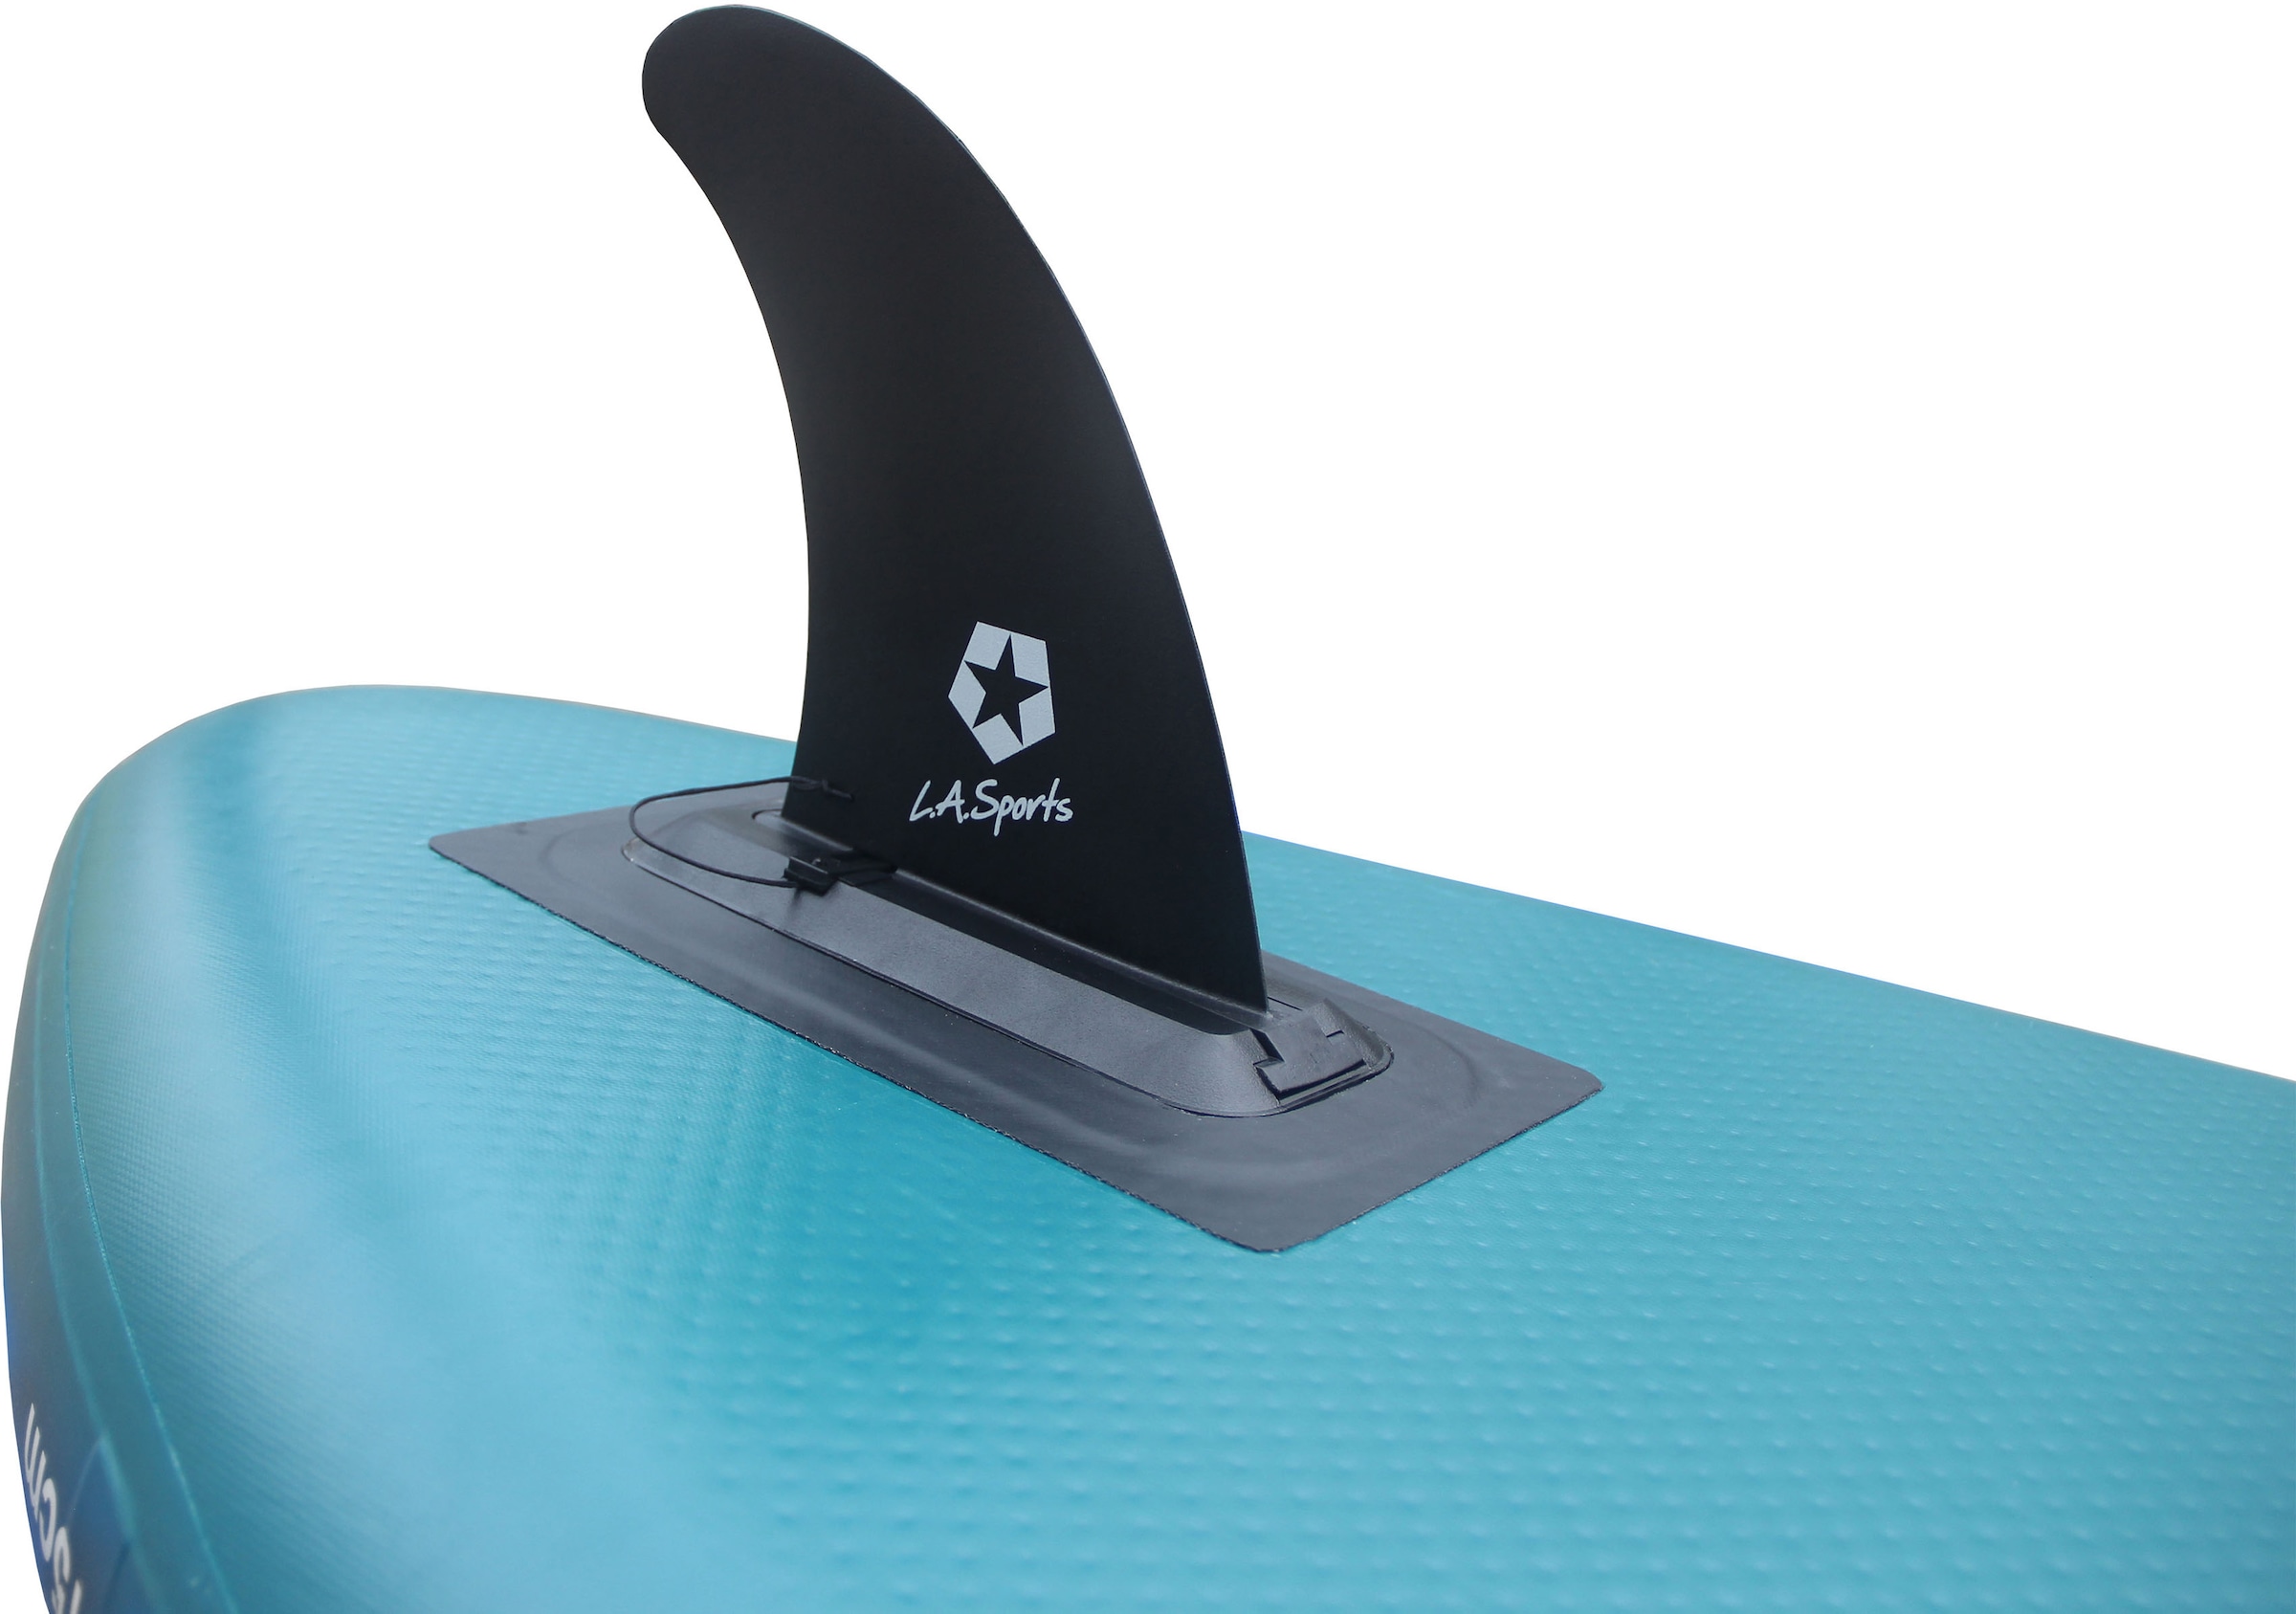 L.A. Sports Inflatable SUP-Board »Devil«, (Set, 6 tlg., mit Paddel, Pumpe  und Transportrucksack) bei OTTO kaufen | OTTO